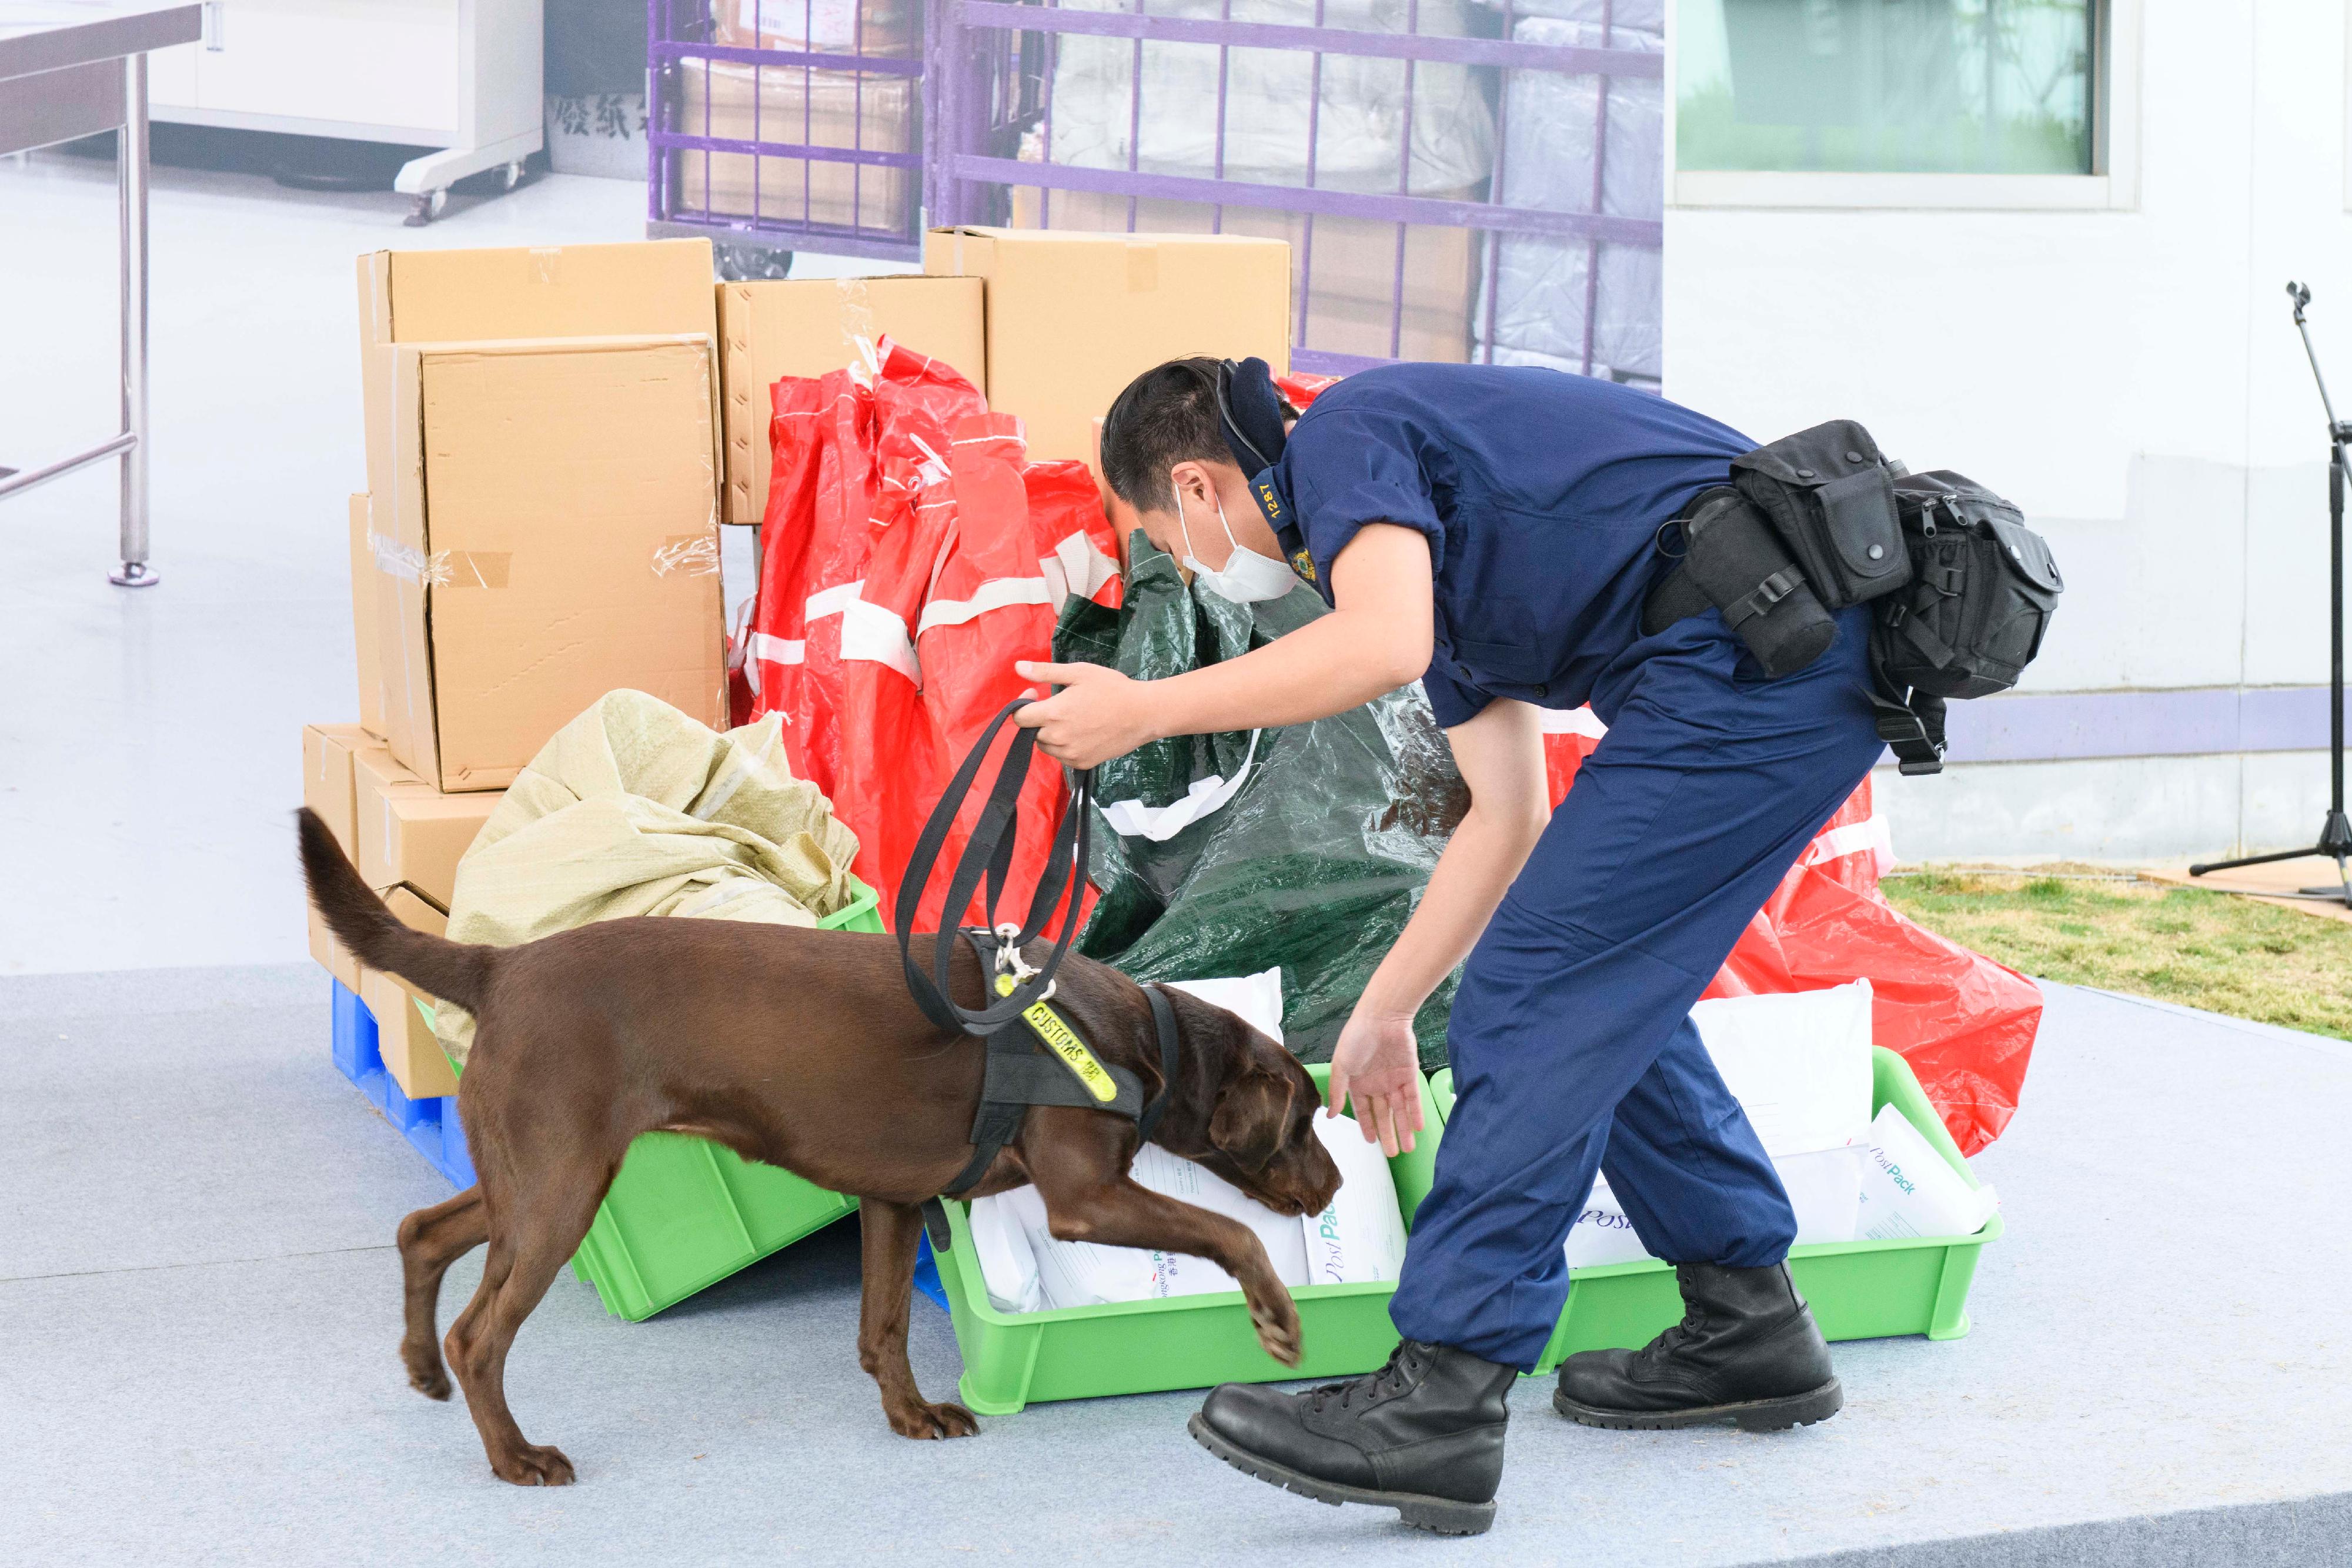 香港海关今日（十二月十五日）公布，正式成立首支枪械搜查犬队，以进一步加强海关在前线堵截非法枪械、枪械配件和弹药流入香港的能力，防范恐怖活动，保护市民生命和维护国家安全。图示领犬员带领枪械搜查犬示范进行嗅查工作。